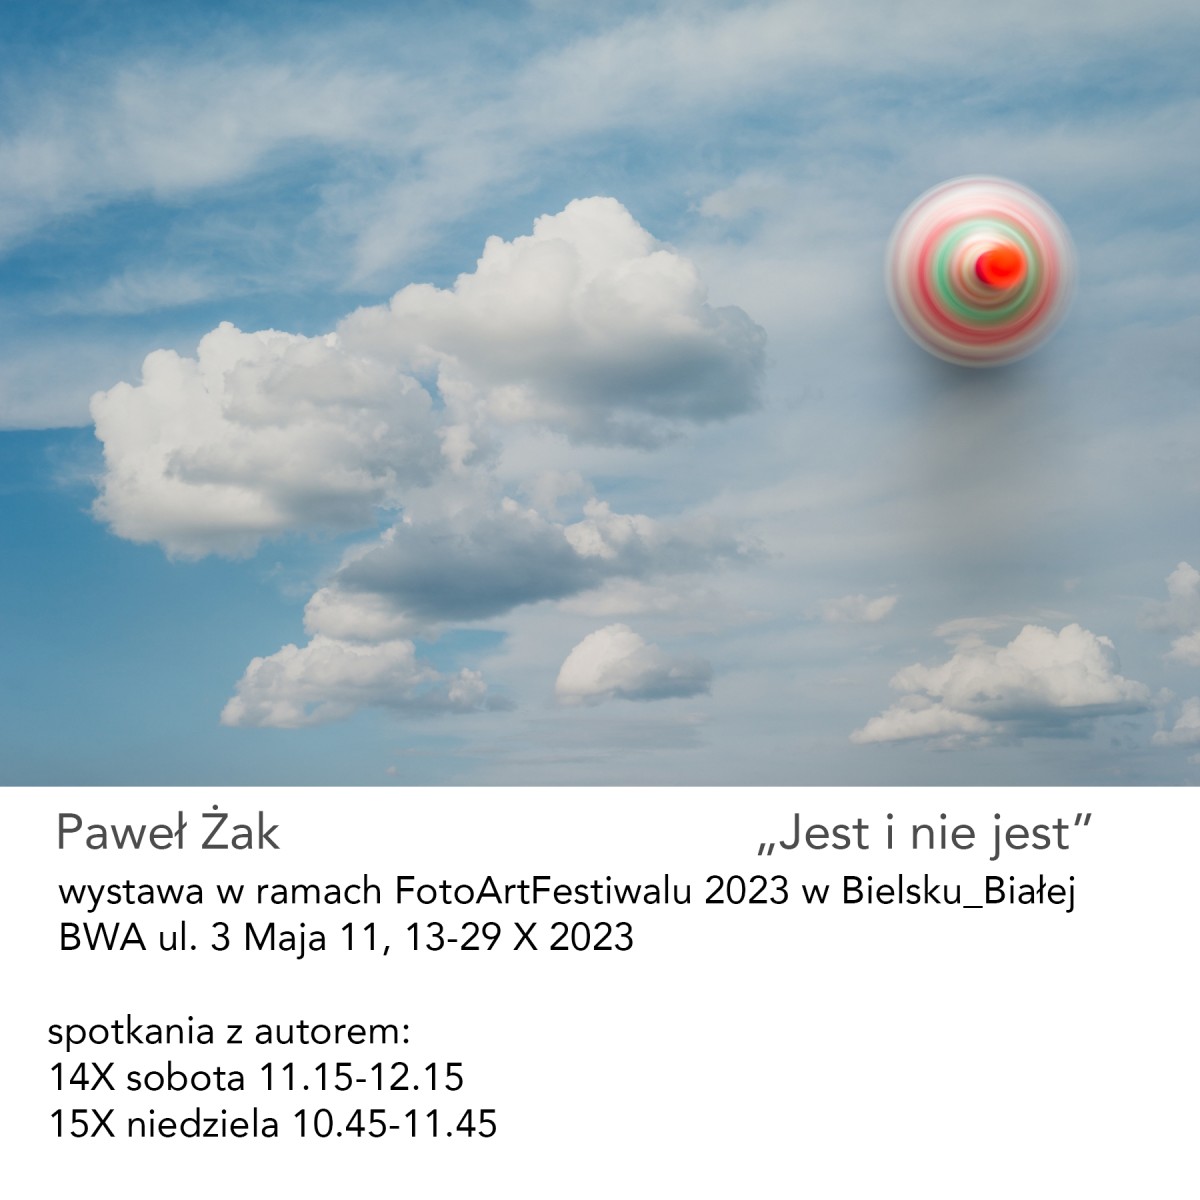 Zaproszenie na wystawe w bielsku bialej - FotoArtFestival Pawel Zak